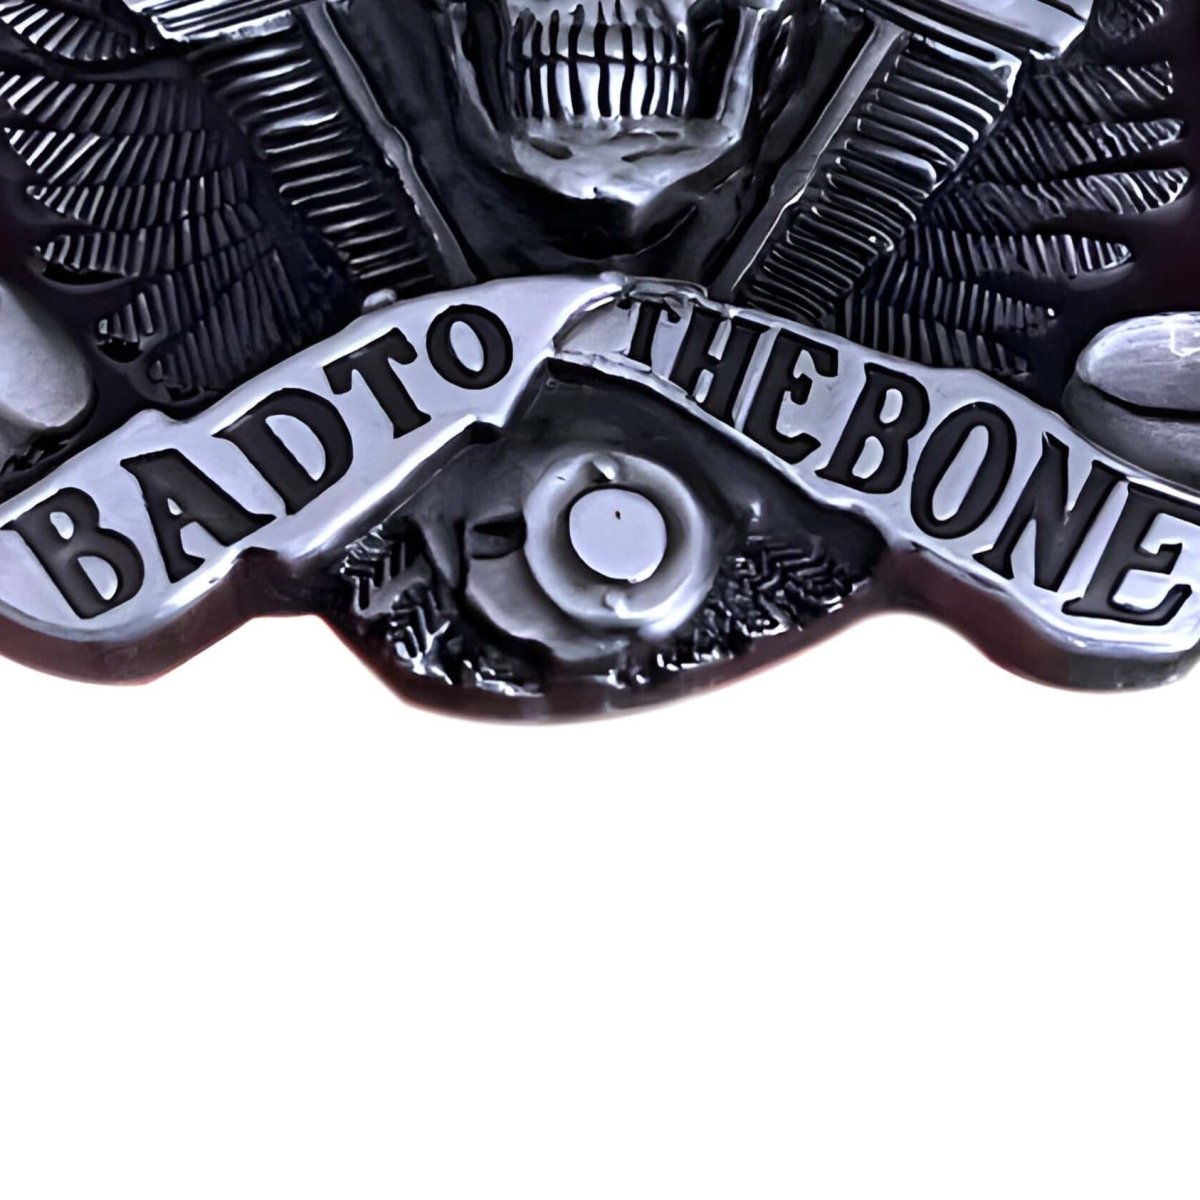 Boucle de ceinture Tête de Mort, "Bad to the bone", modèle Derek - La Boutique de la Ceinture